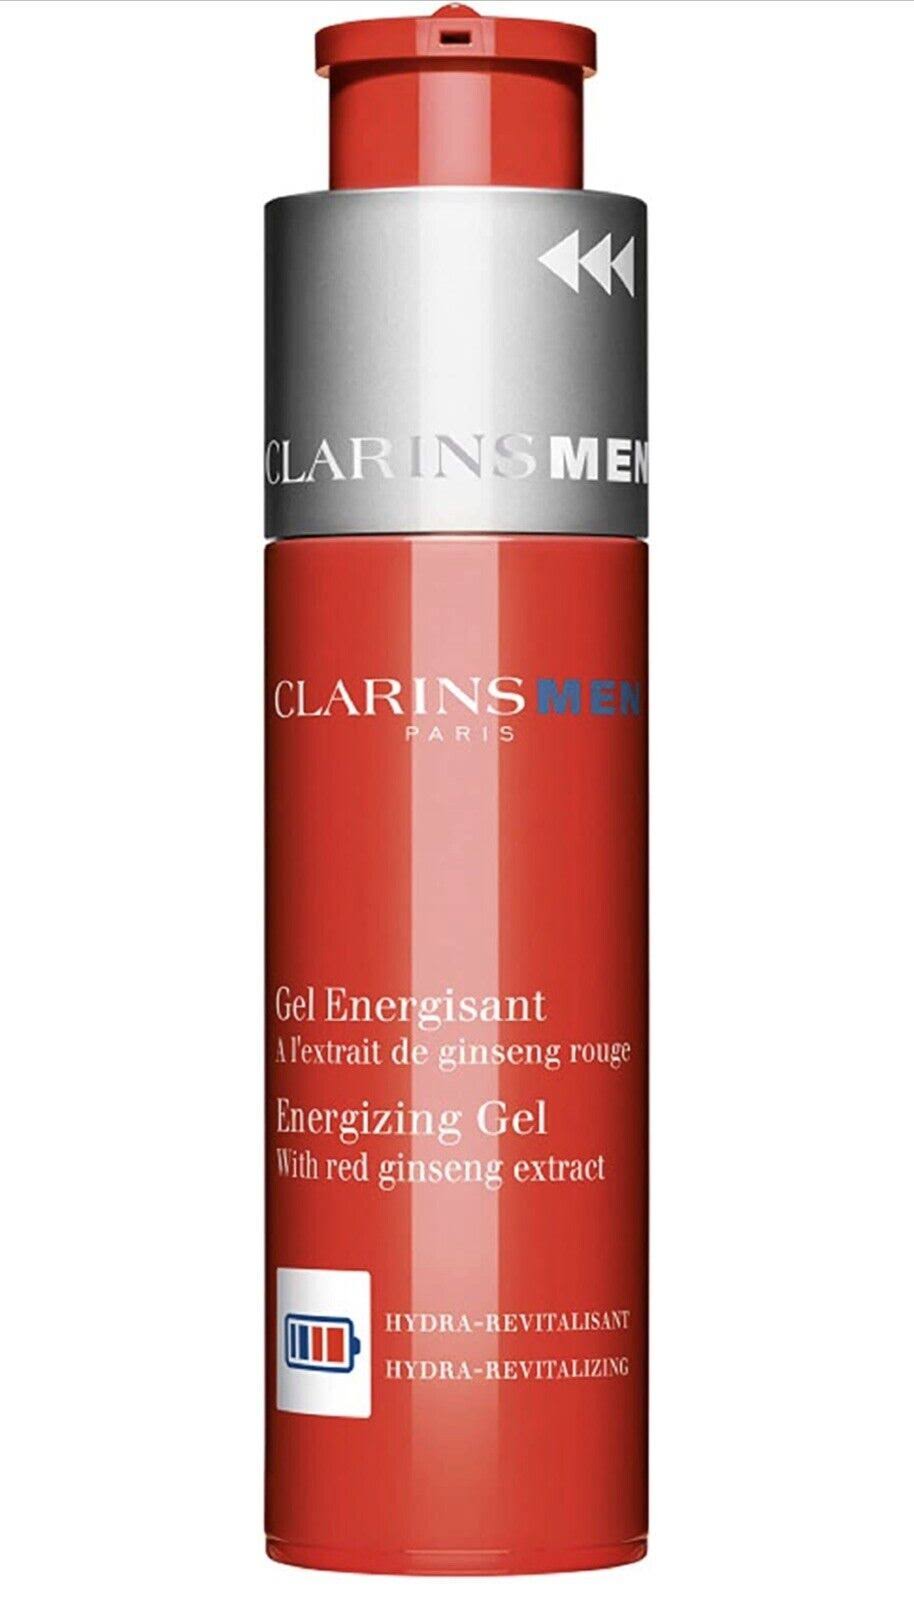 Clarins Men Energizing GEL 50 ml